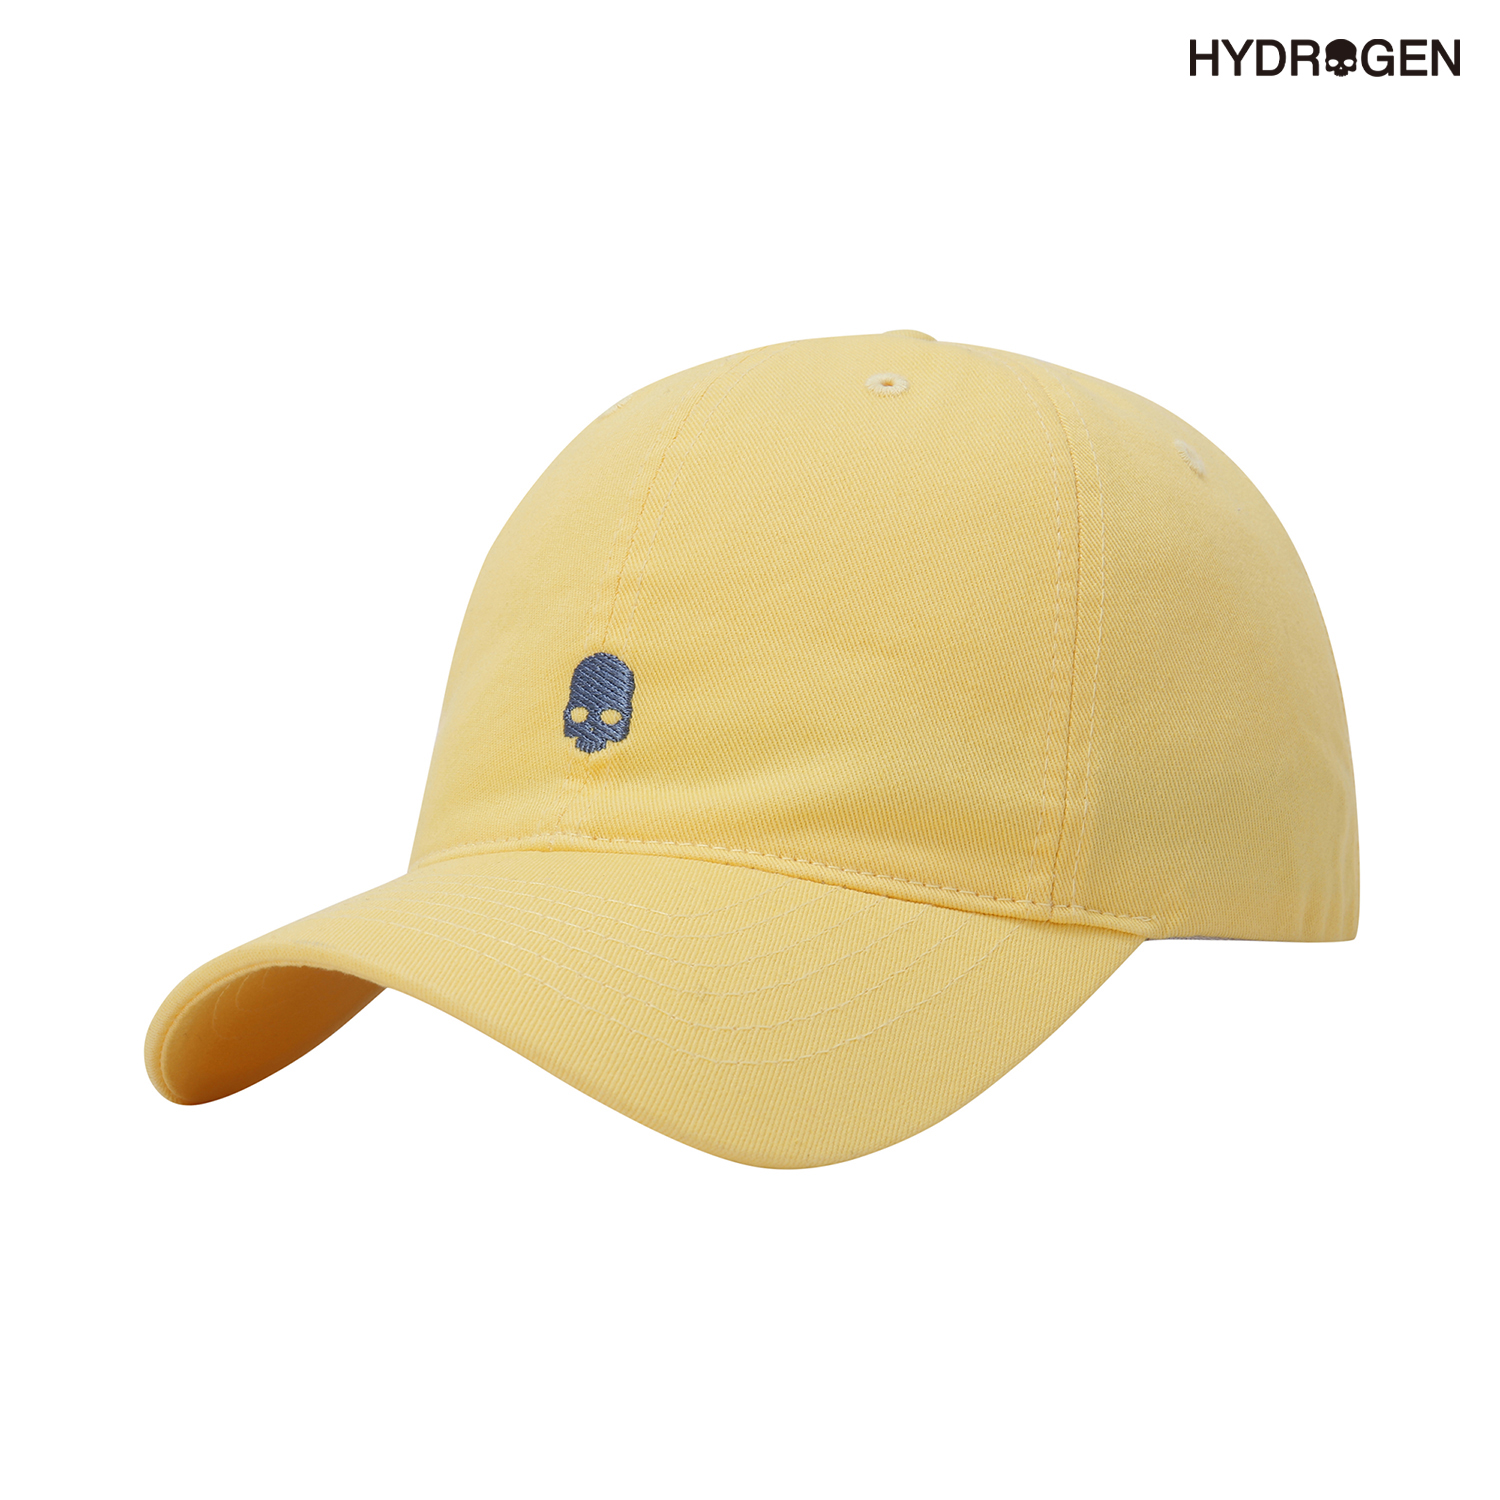 옐로우,노랑,용품,캡,모자,경량,트레킹,하이킹,H31D7CP906_YL,하이드로겐, hydrogen